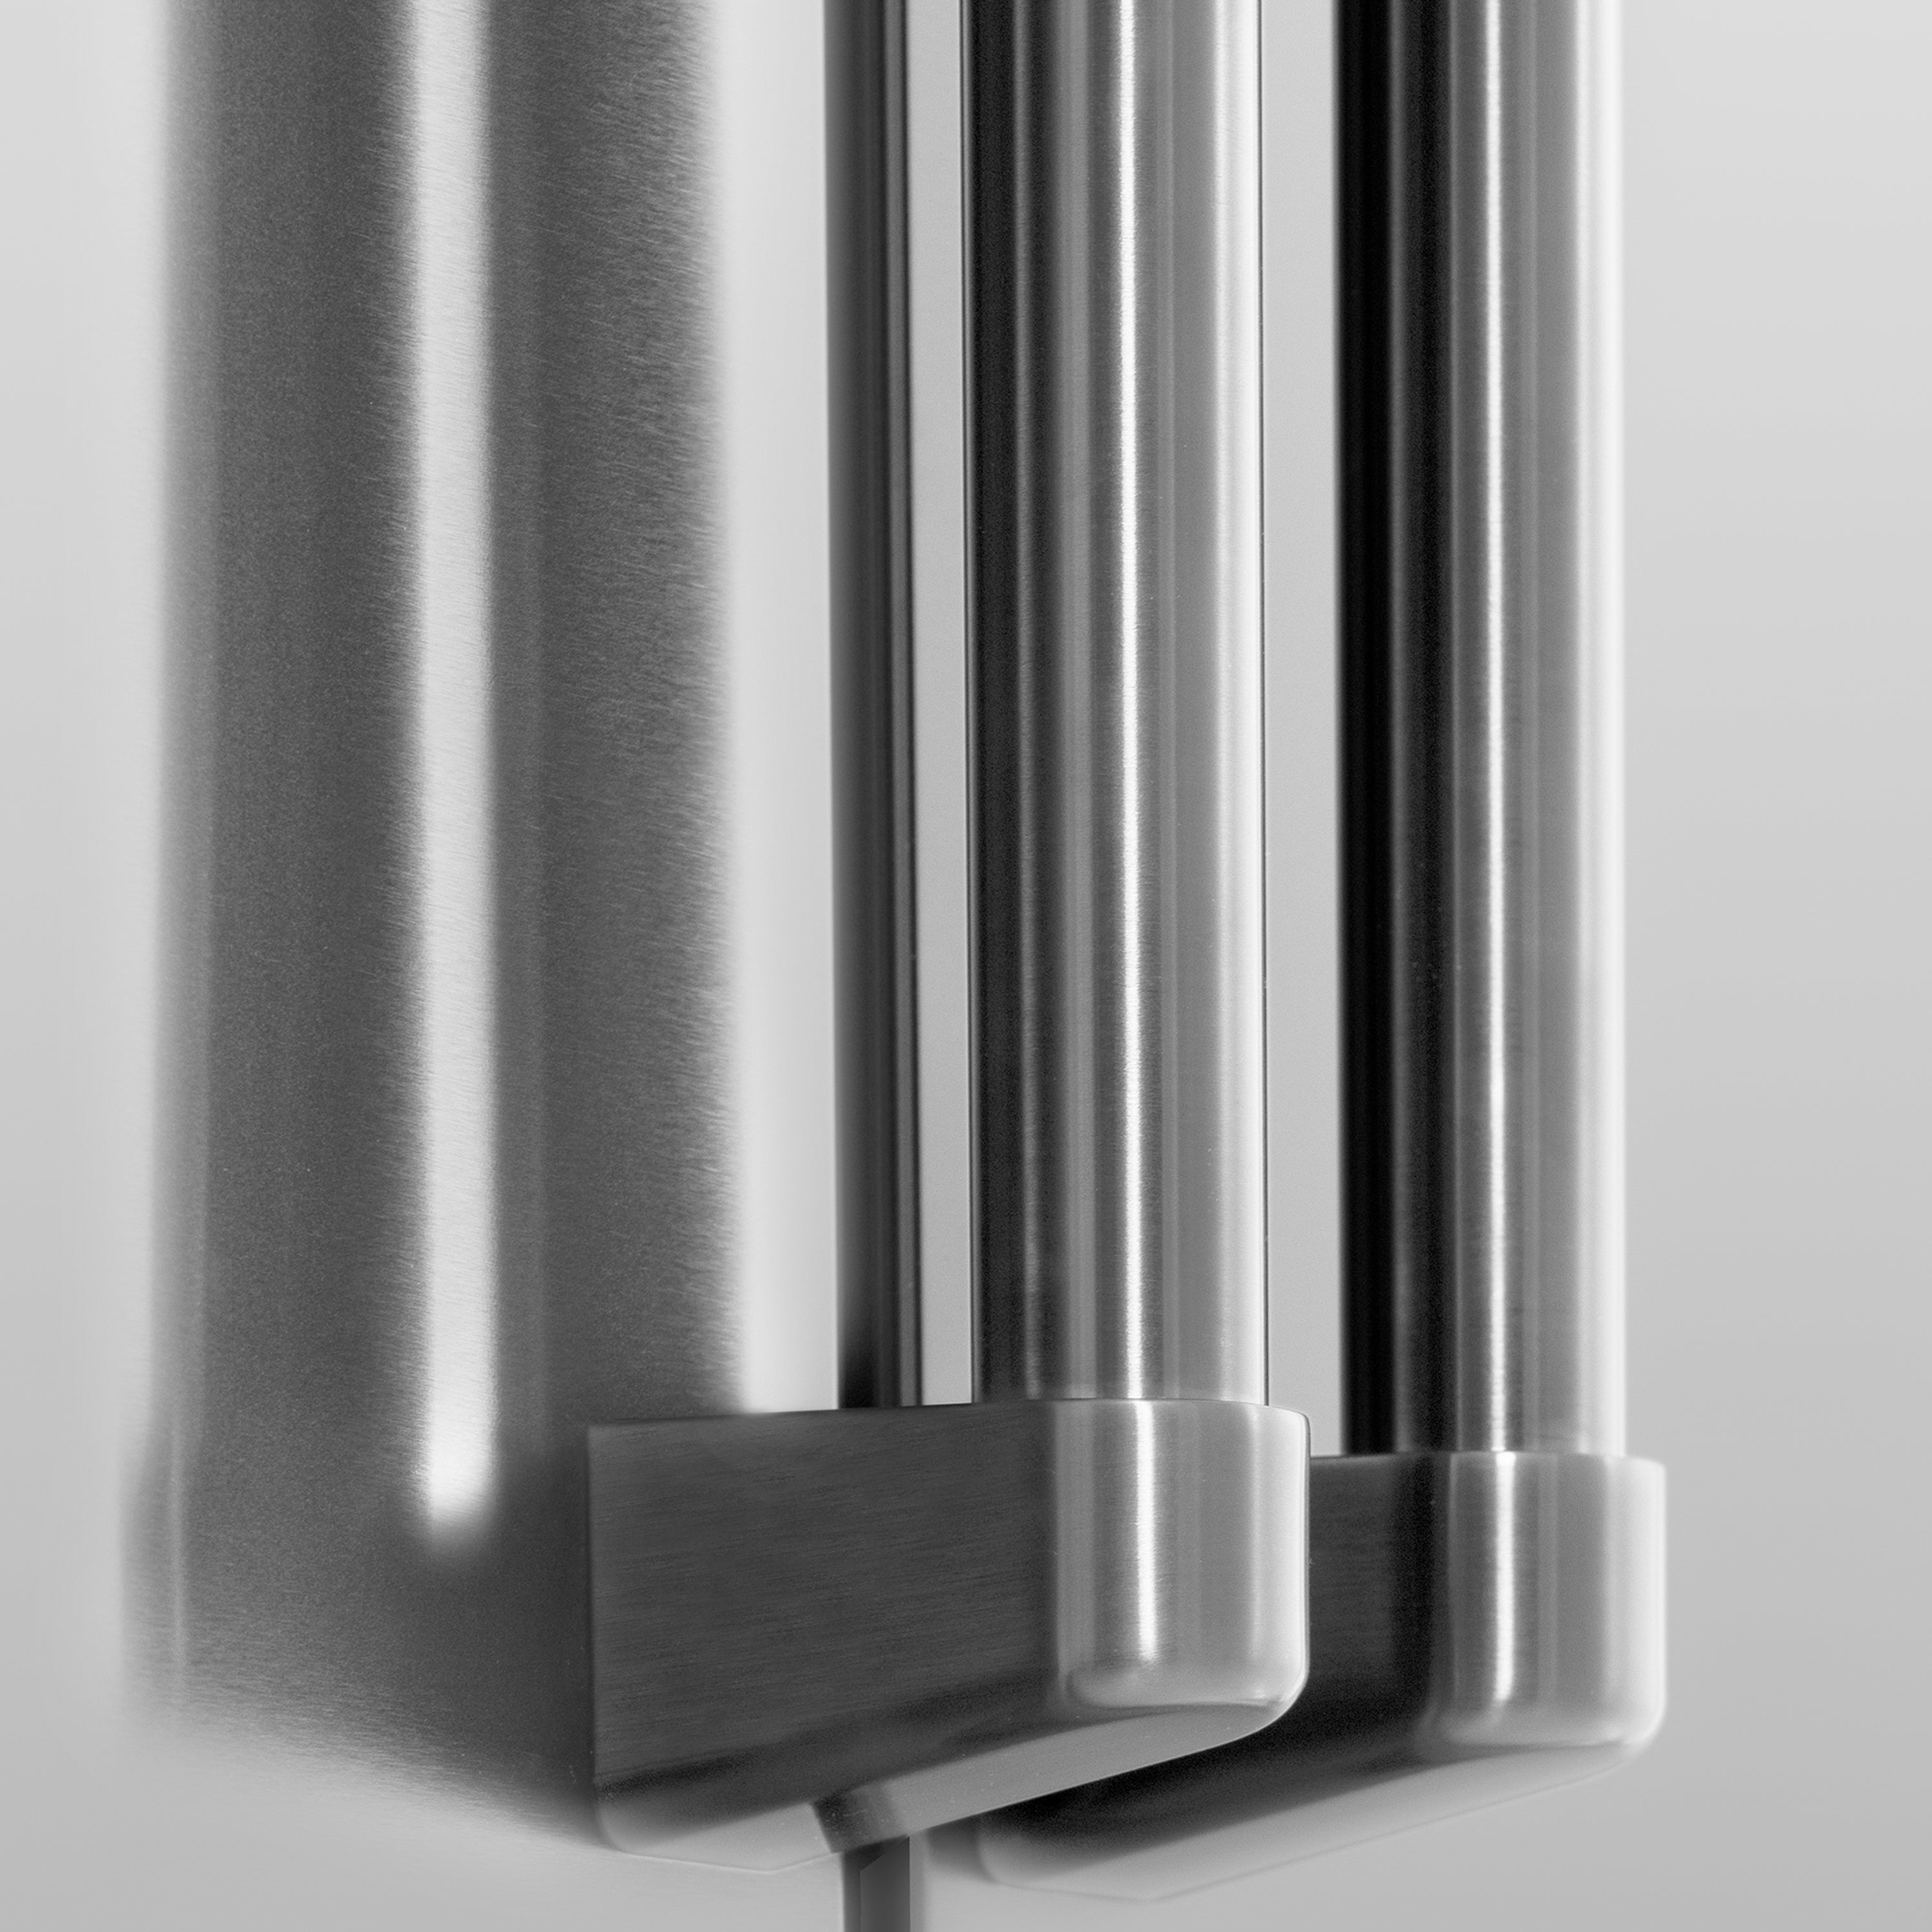 ZLINE 36" 21.6 cu. ft 4-Door French Door Refrigerator with Water and Ice Dispenser in Fingerprint Resistant Stainless Steel